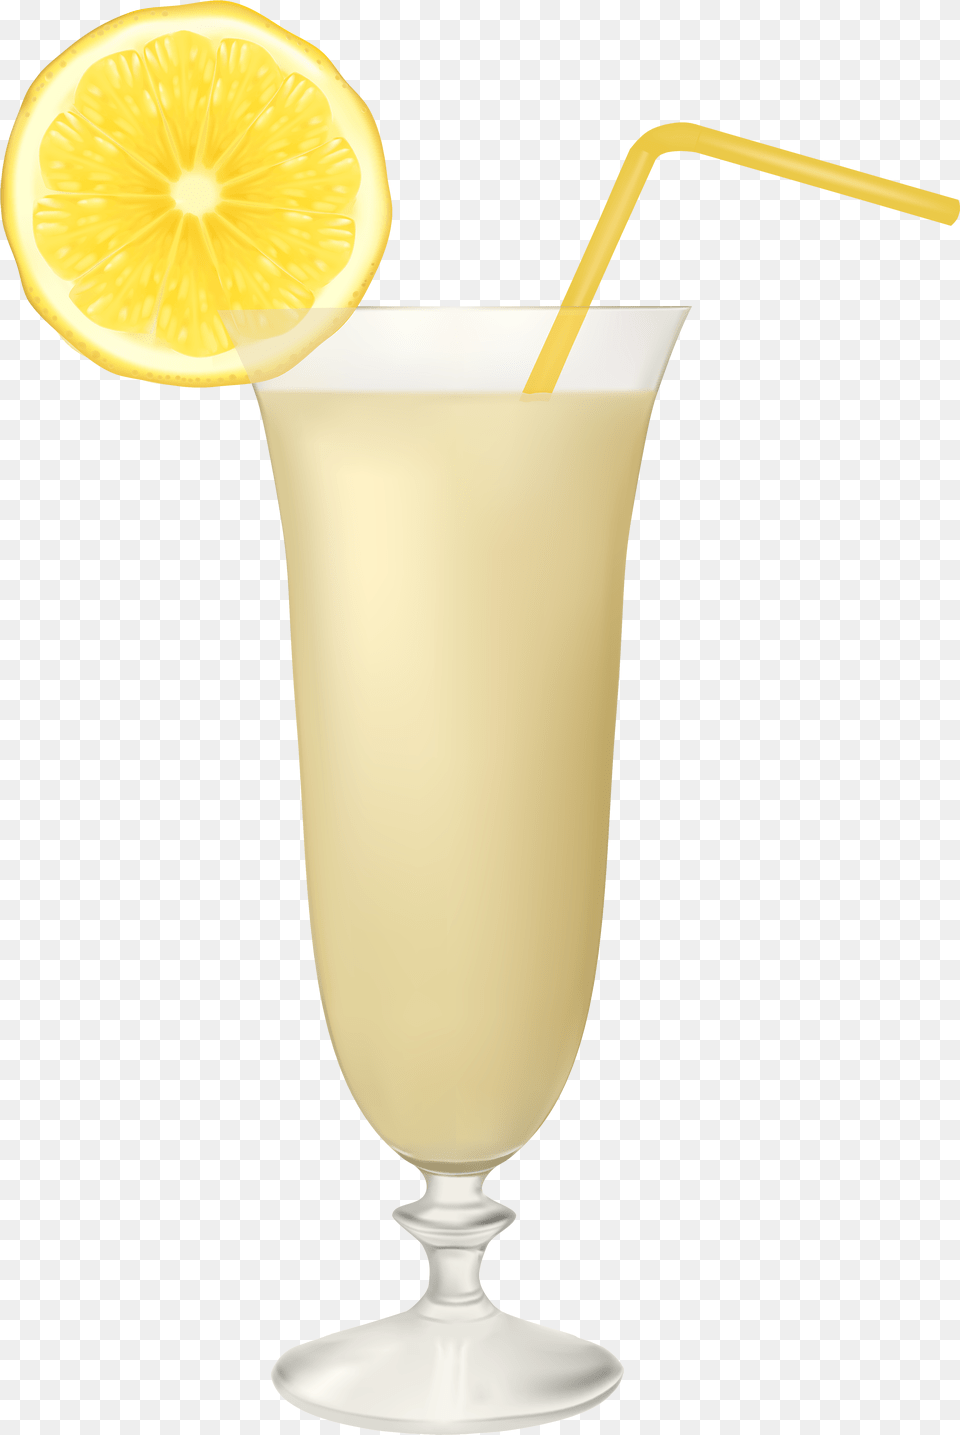 Lemon Juice Glass Cartoon, Produce, Plant, Citrus Fruit, Orange Free Transparent Png